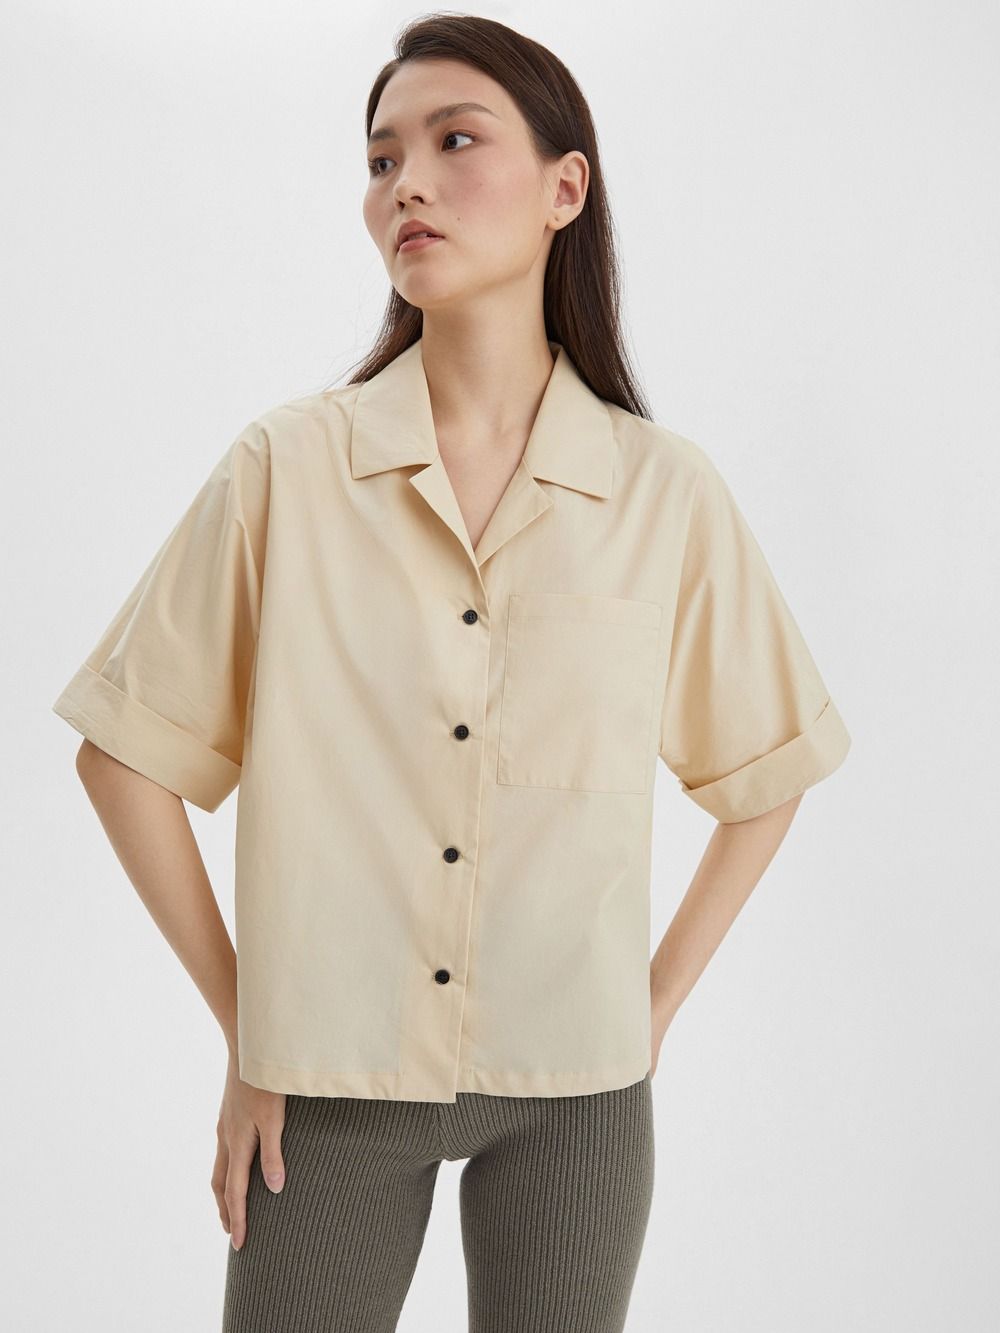 

Рубашка женская с коротким рукавом из хлопка, цвет – бежевый